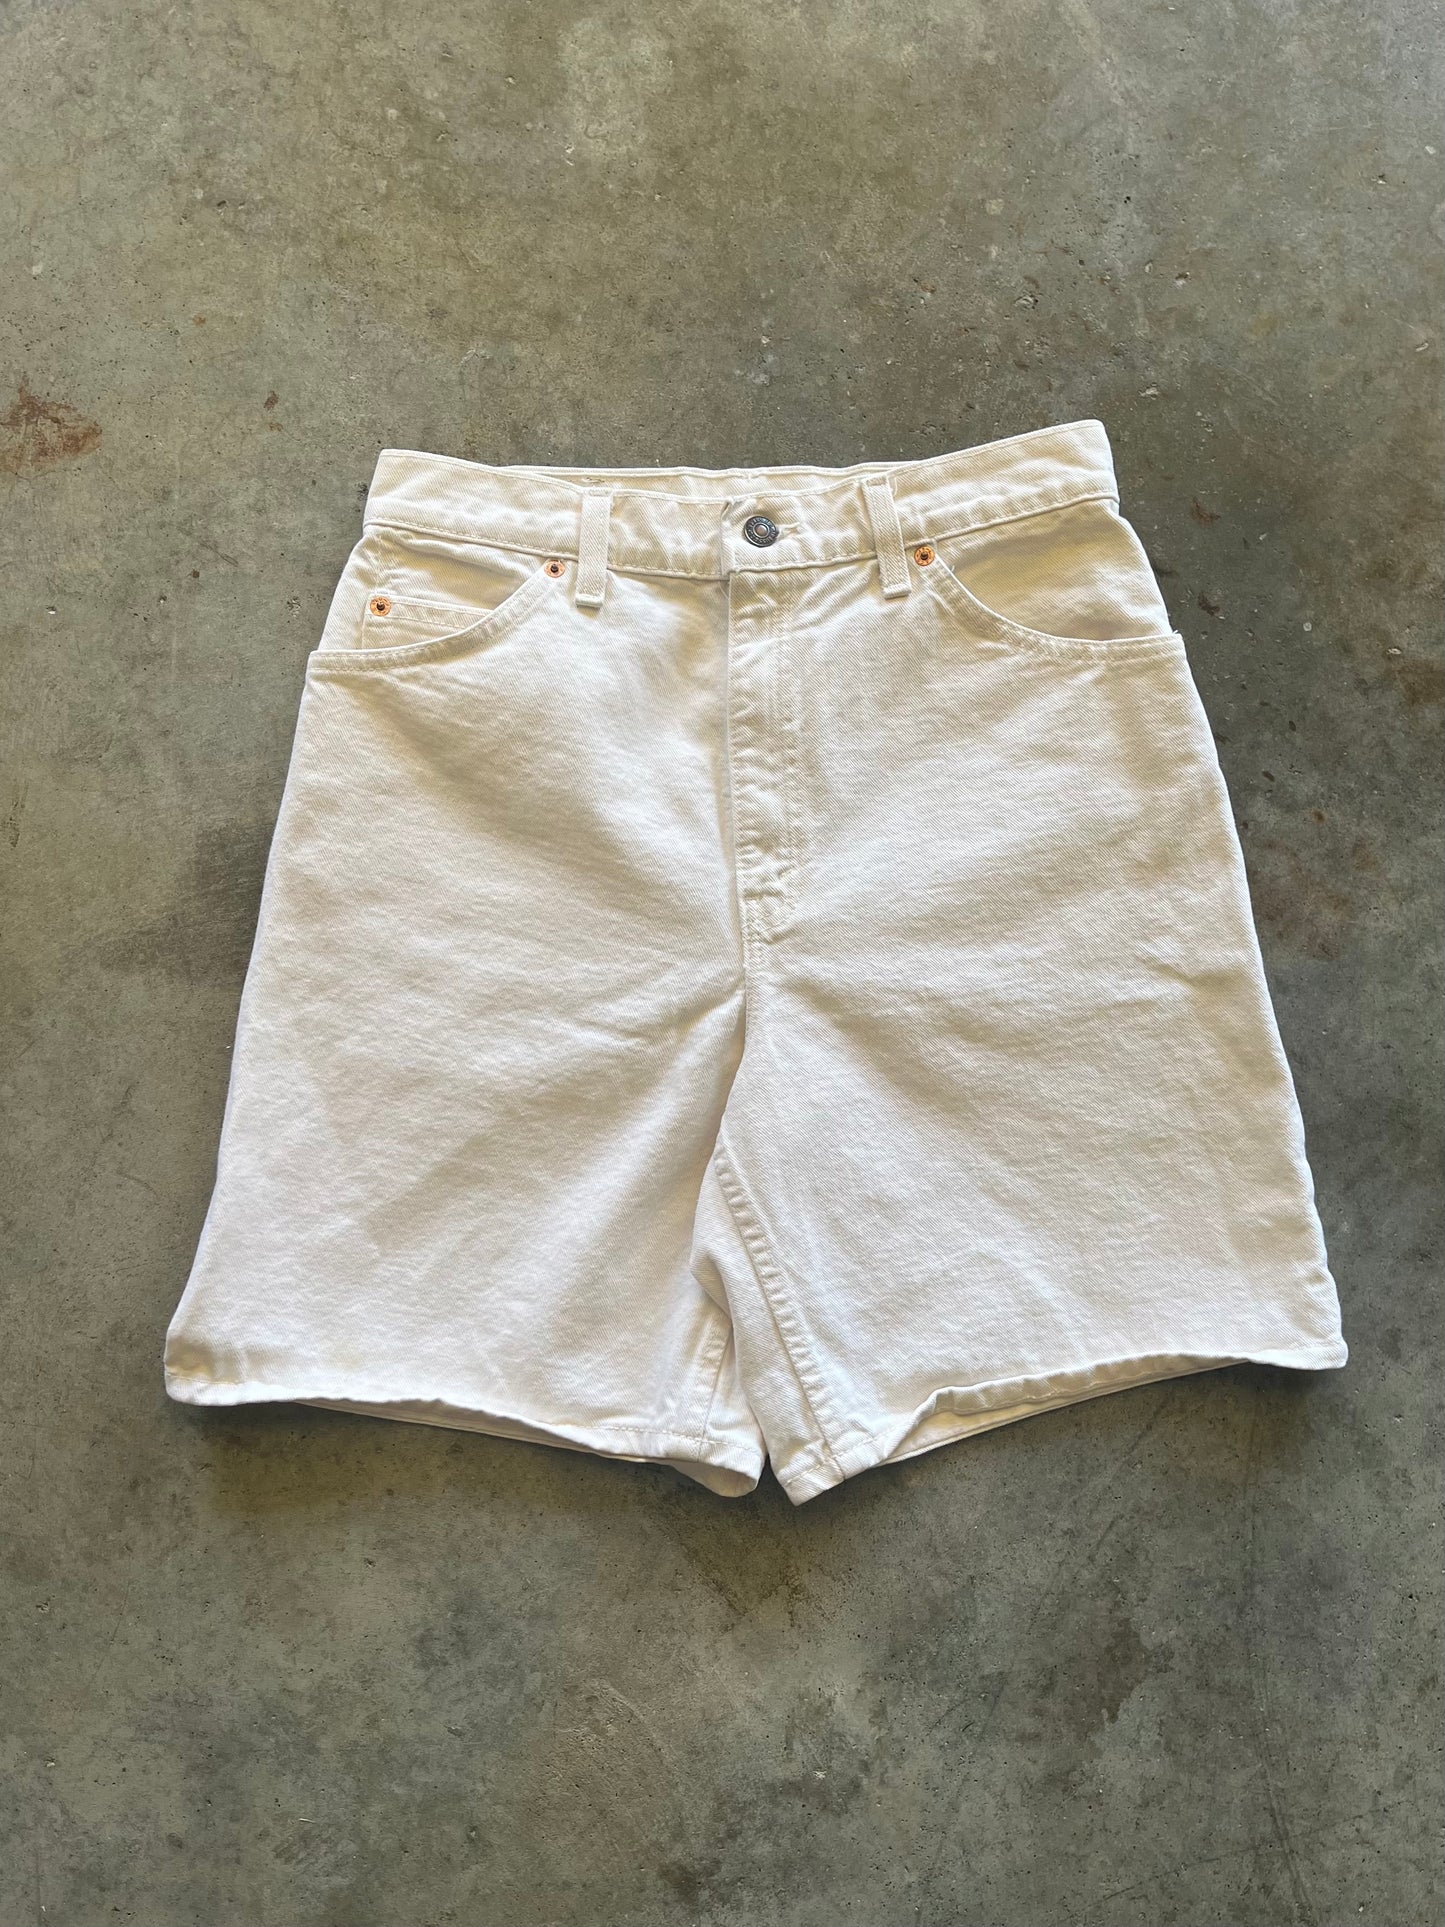 (10) Vintage Levis Orange Tabs Shorts